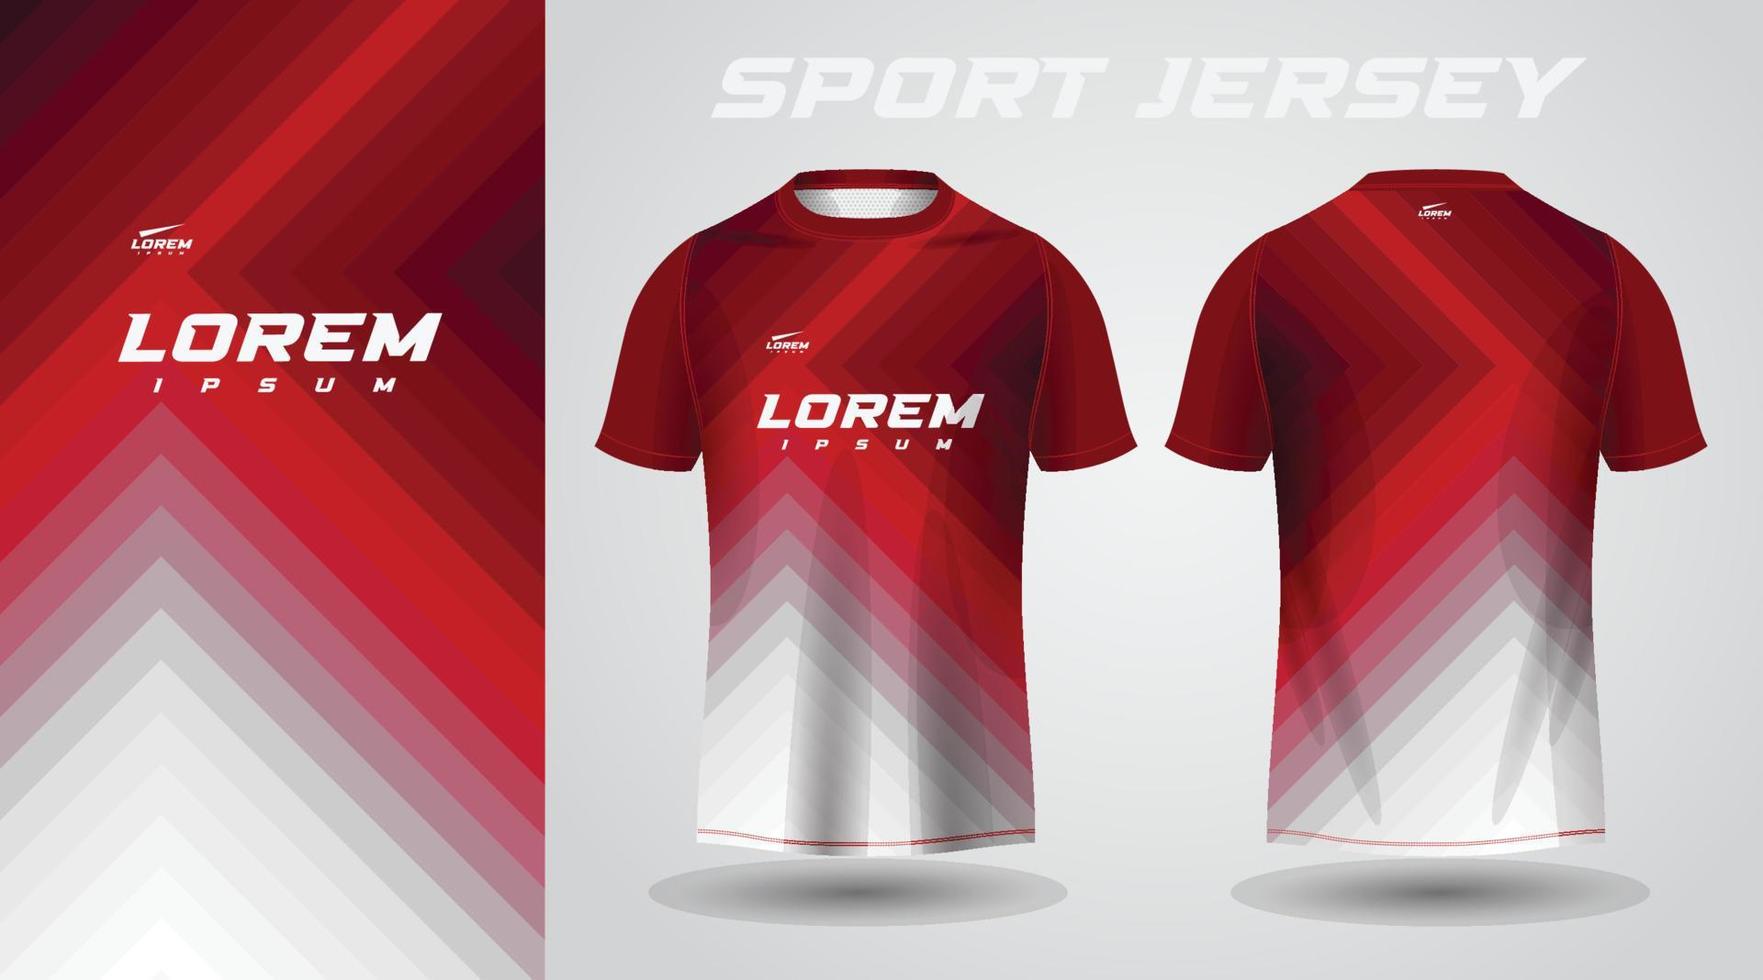 red shirt sport jersey design 10843307 Vector Art at Vecteezy